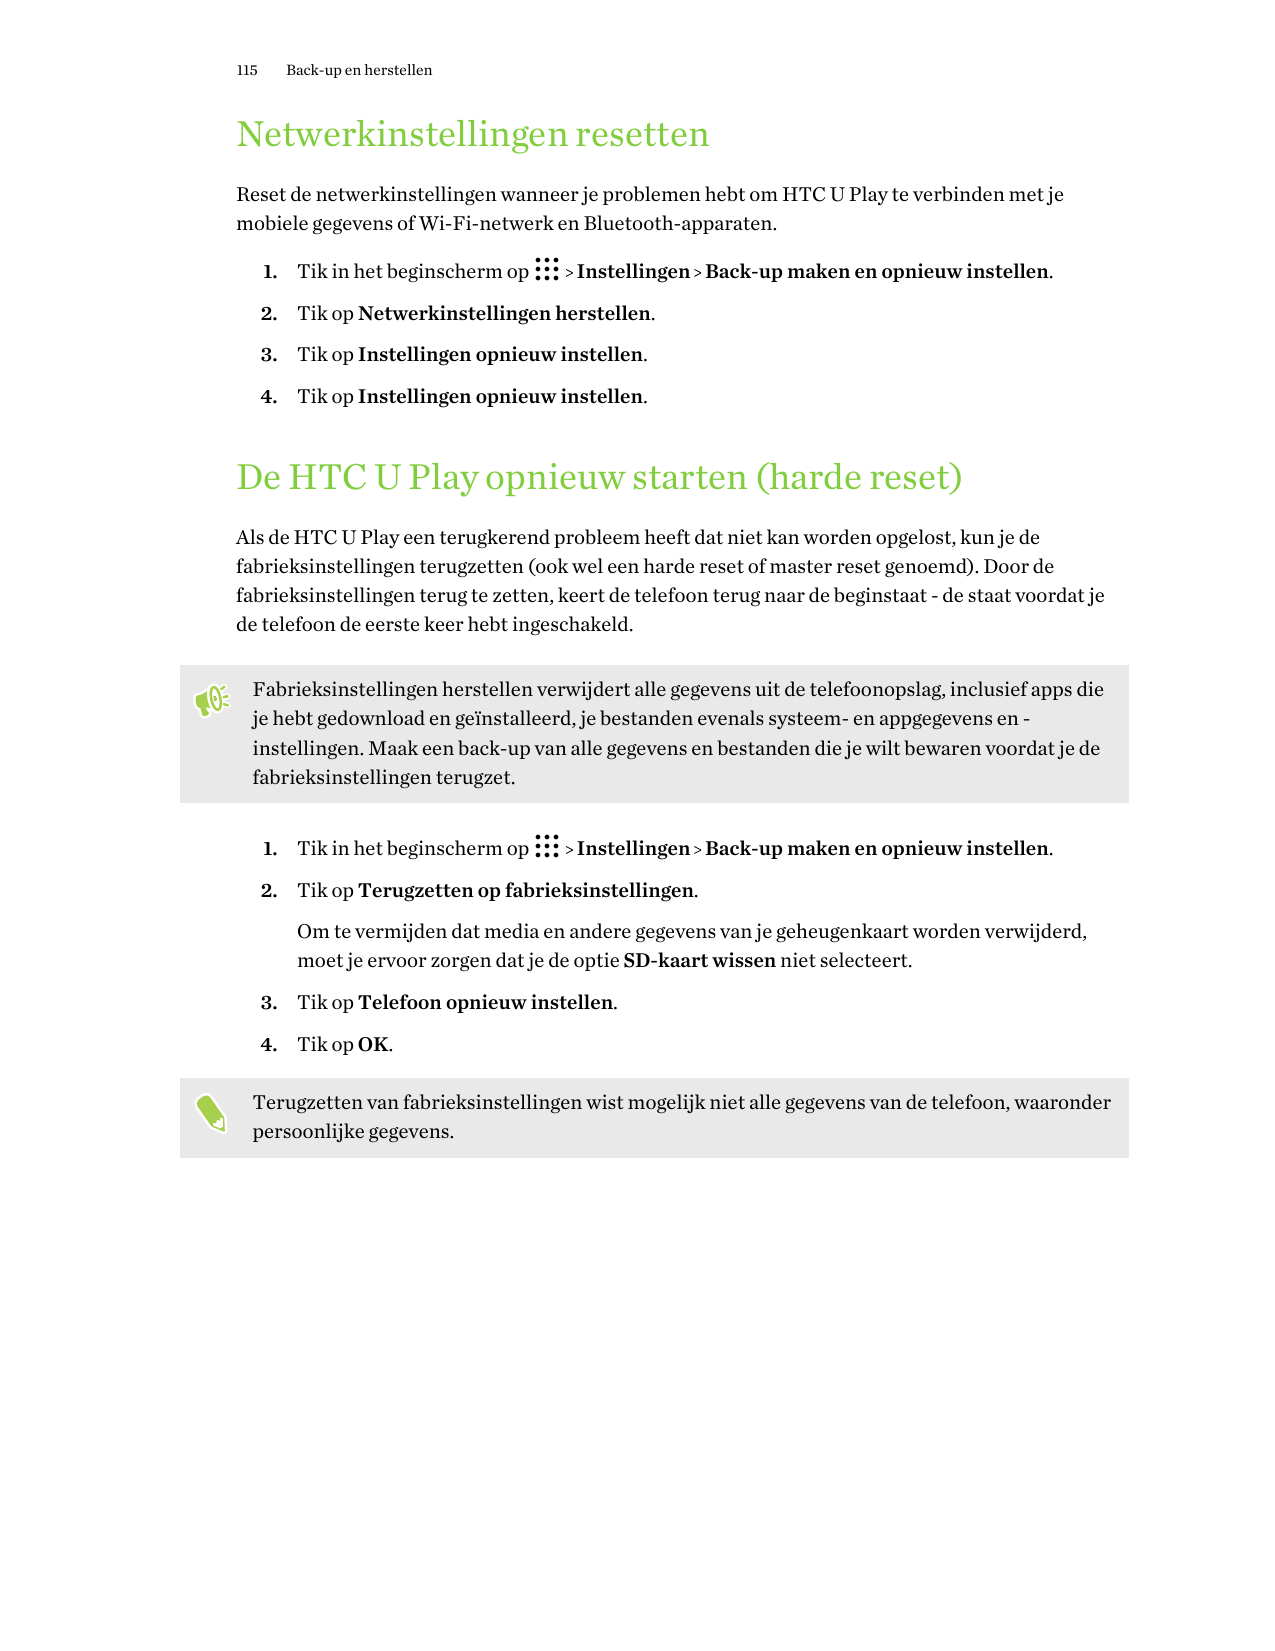 115Back-up en herstellenNetwerkinstellingen resettenReset de netwerkinstellingen wanneer je problemen hebt om HTC U Play te verb